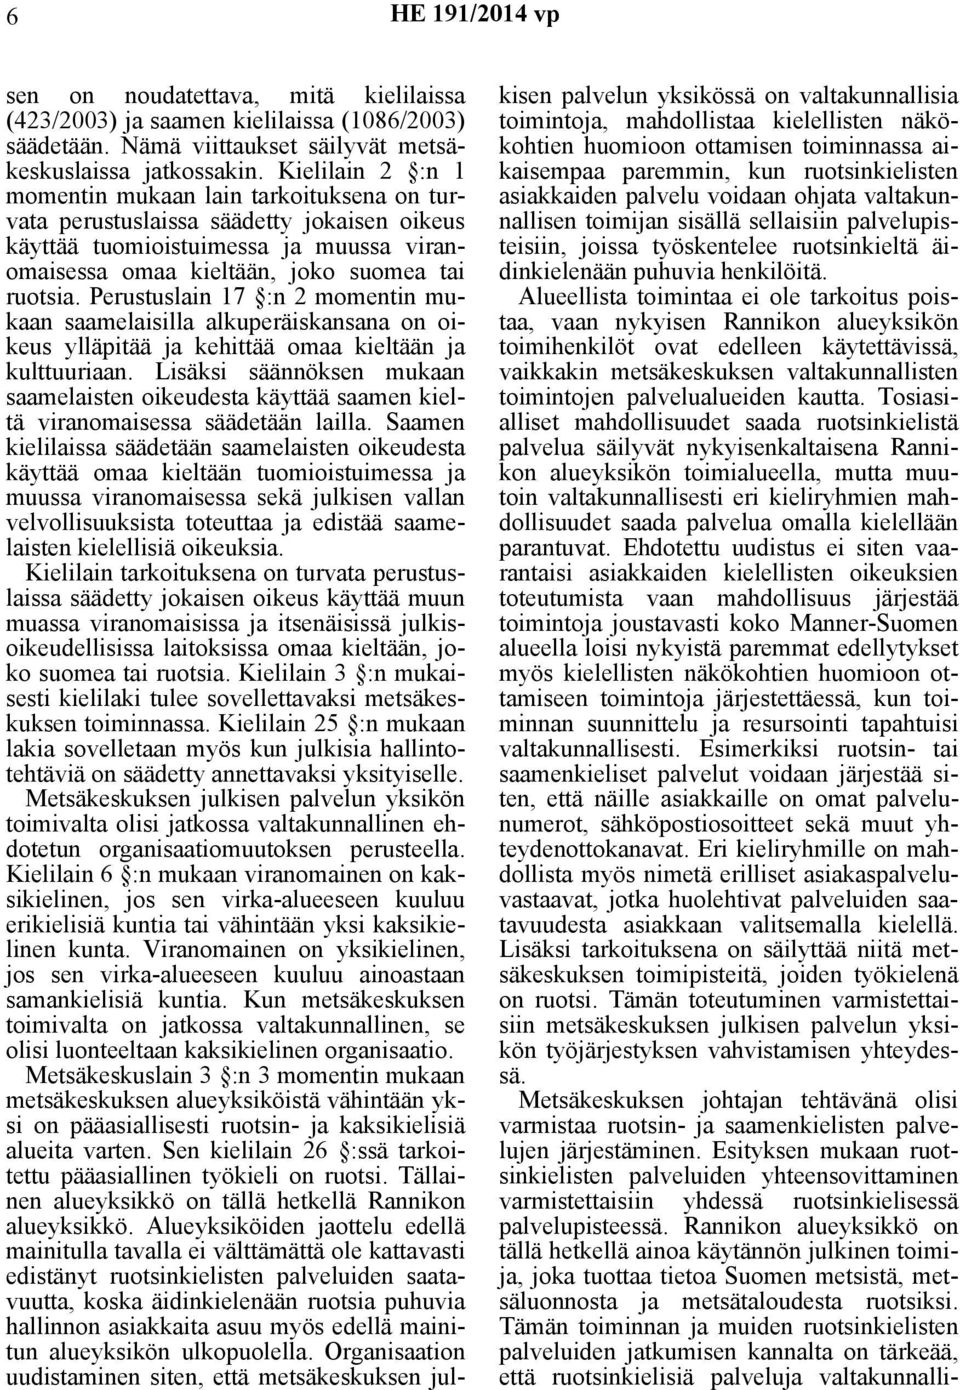 Perustuslain 17 :n 2 momentin mukaan saamelaisilla alkuperäiskansana on oikeus ylläpitää ja kehittää omaa kieltään ja kulttuuriaan.